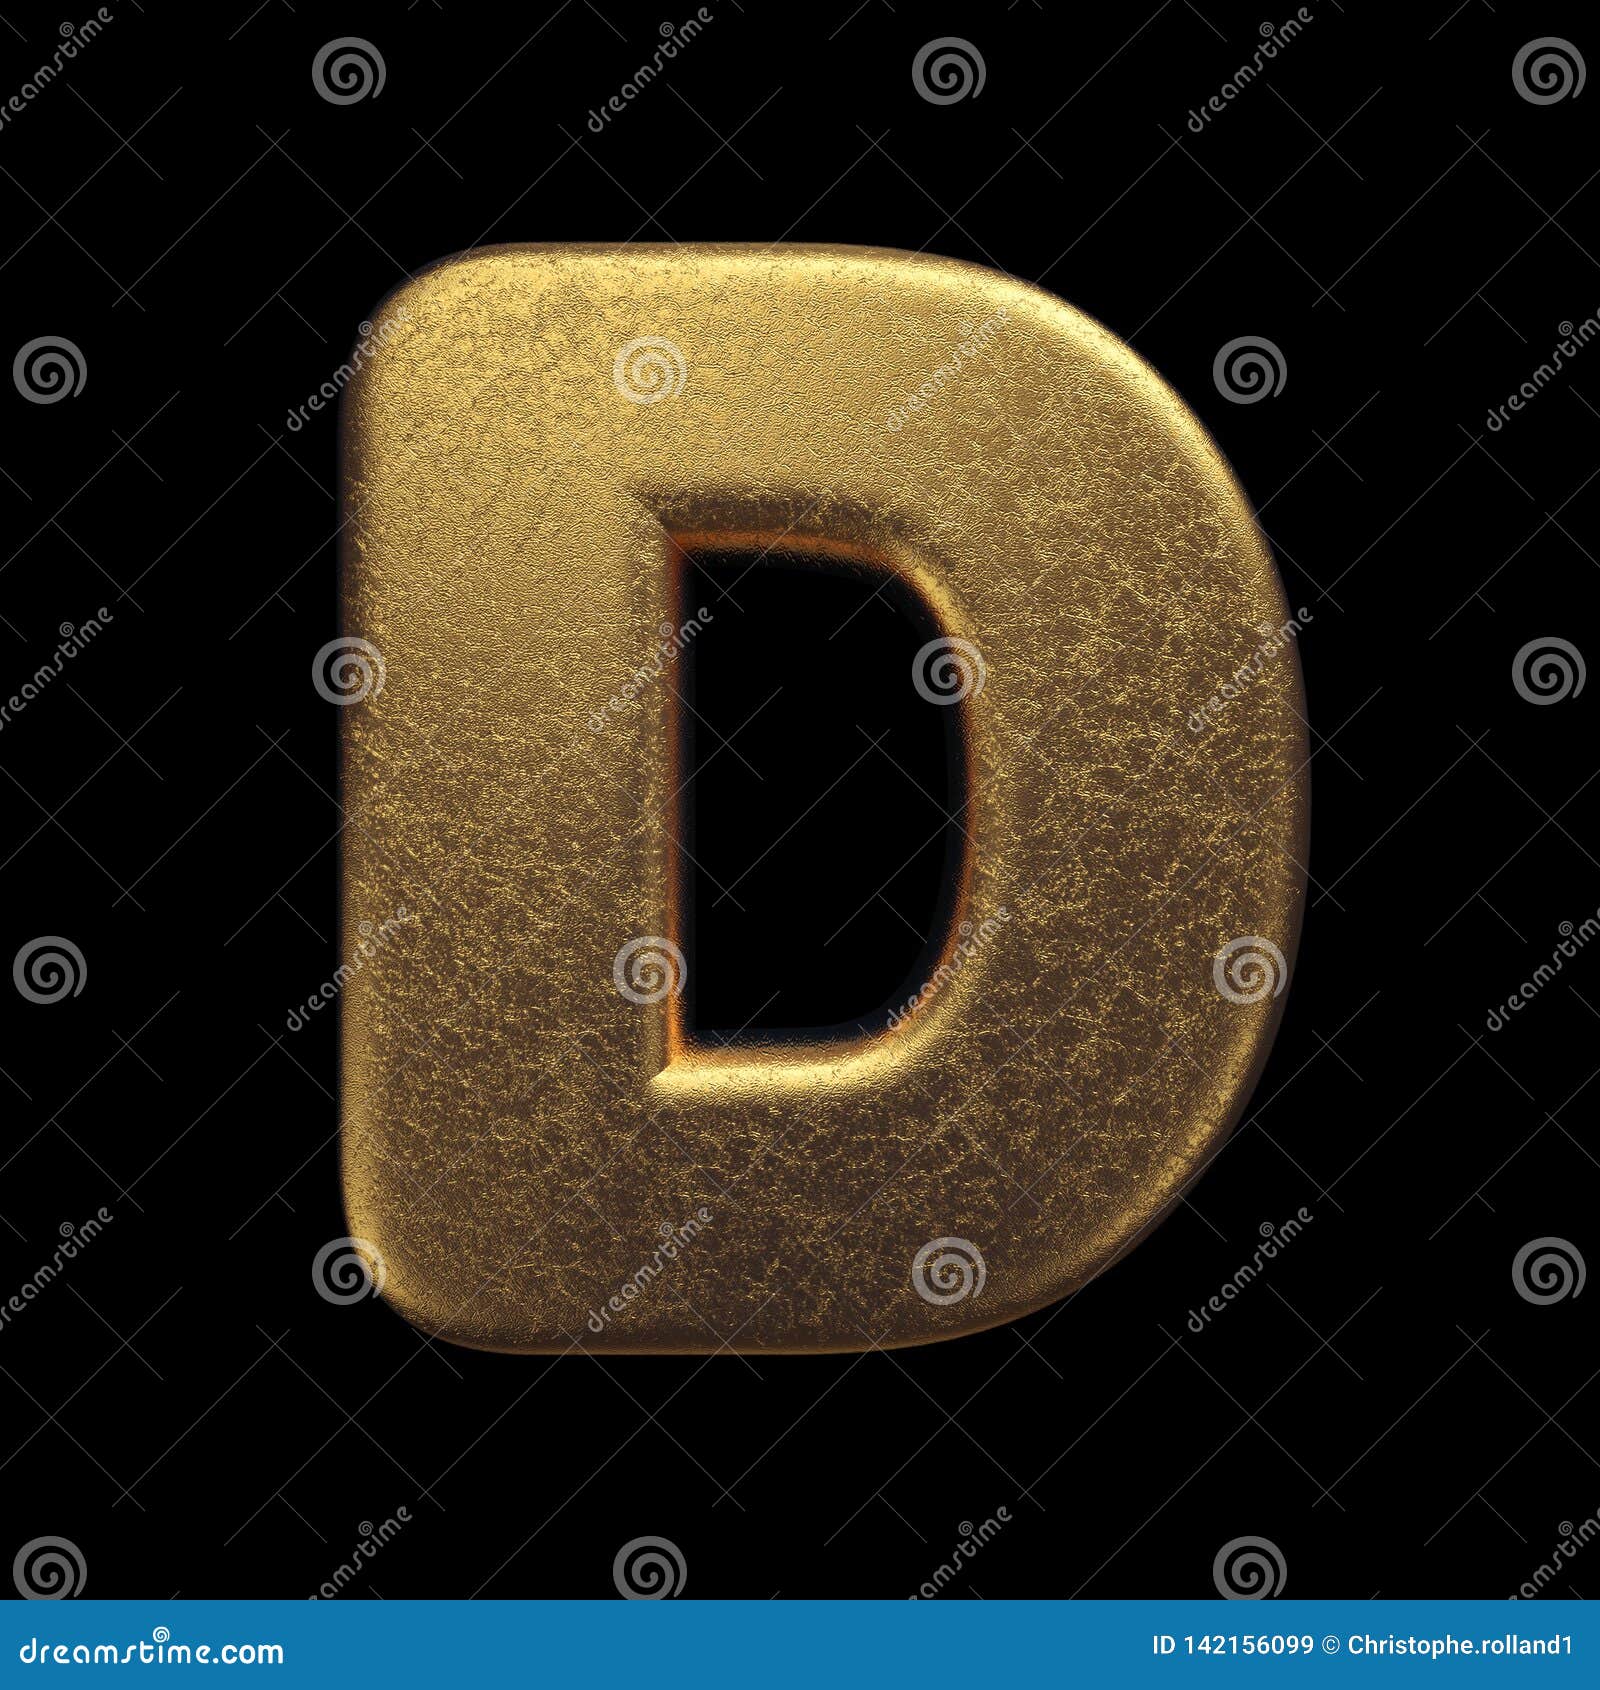 Gold Letter D - Capital 3d Precious Metal Font - Suitable for Fortune ...